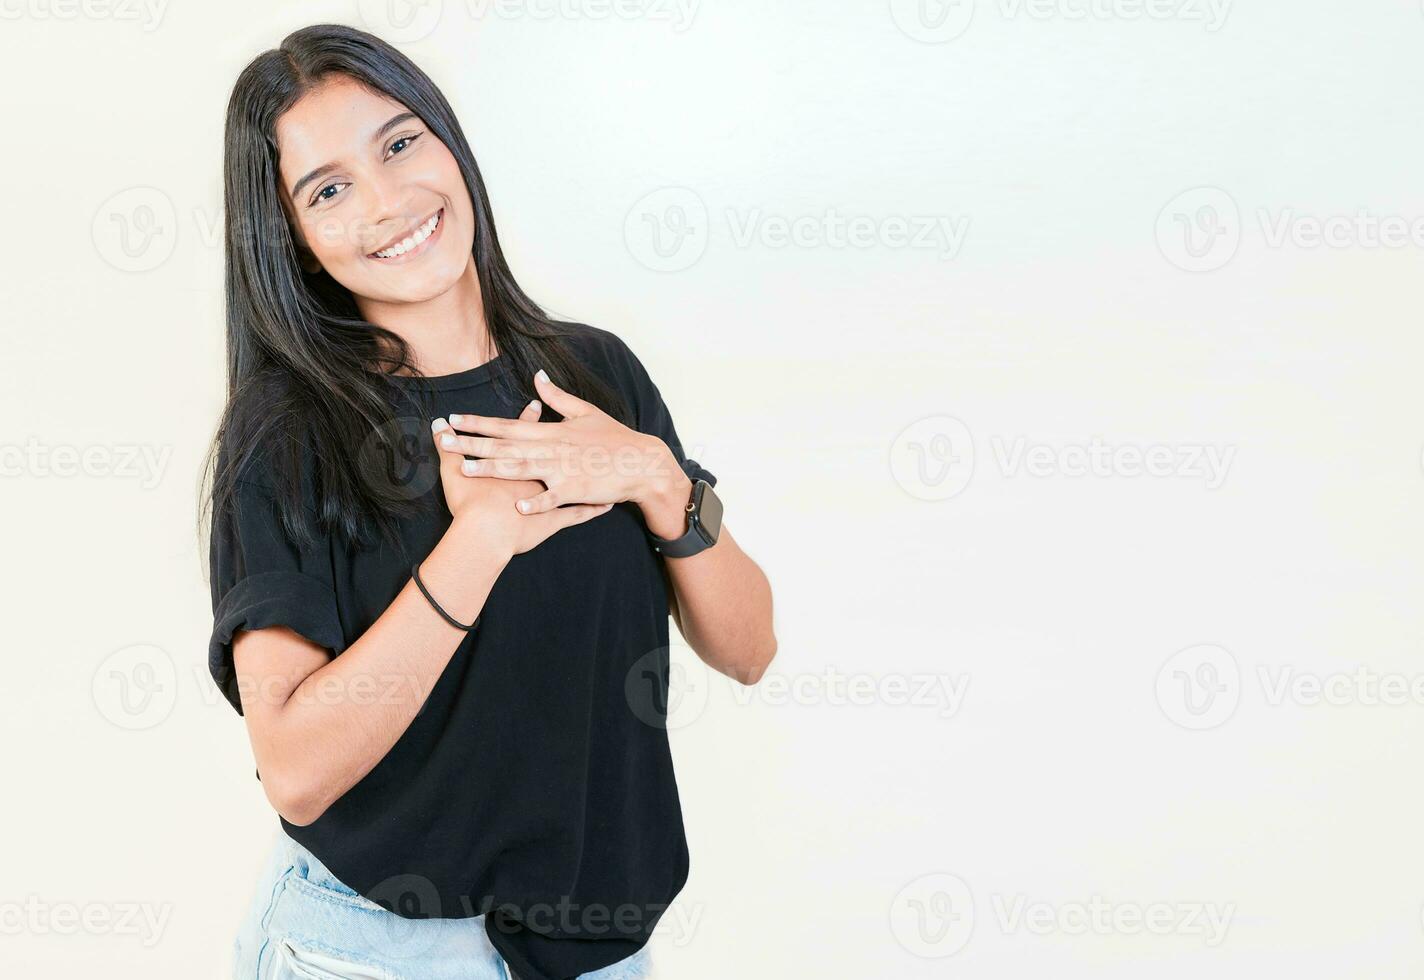 dankbar Teenager Mädchen lächelnd mit Hände auf Truhe isoliert. positiv Latein Mädchen mit Hände auf Brust. dankbar Menschen mit Hände auf Herz foto